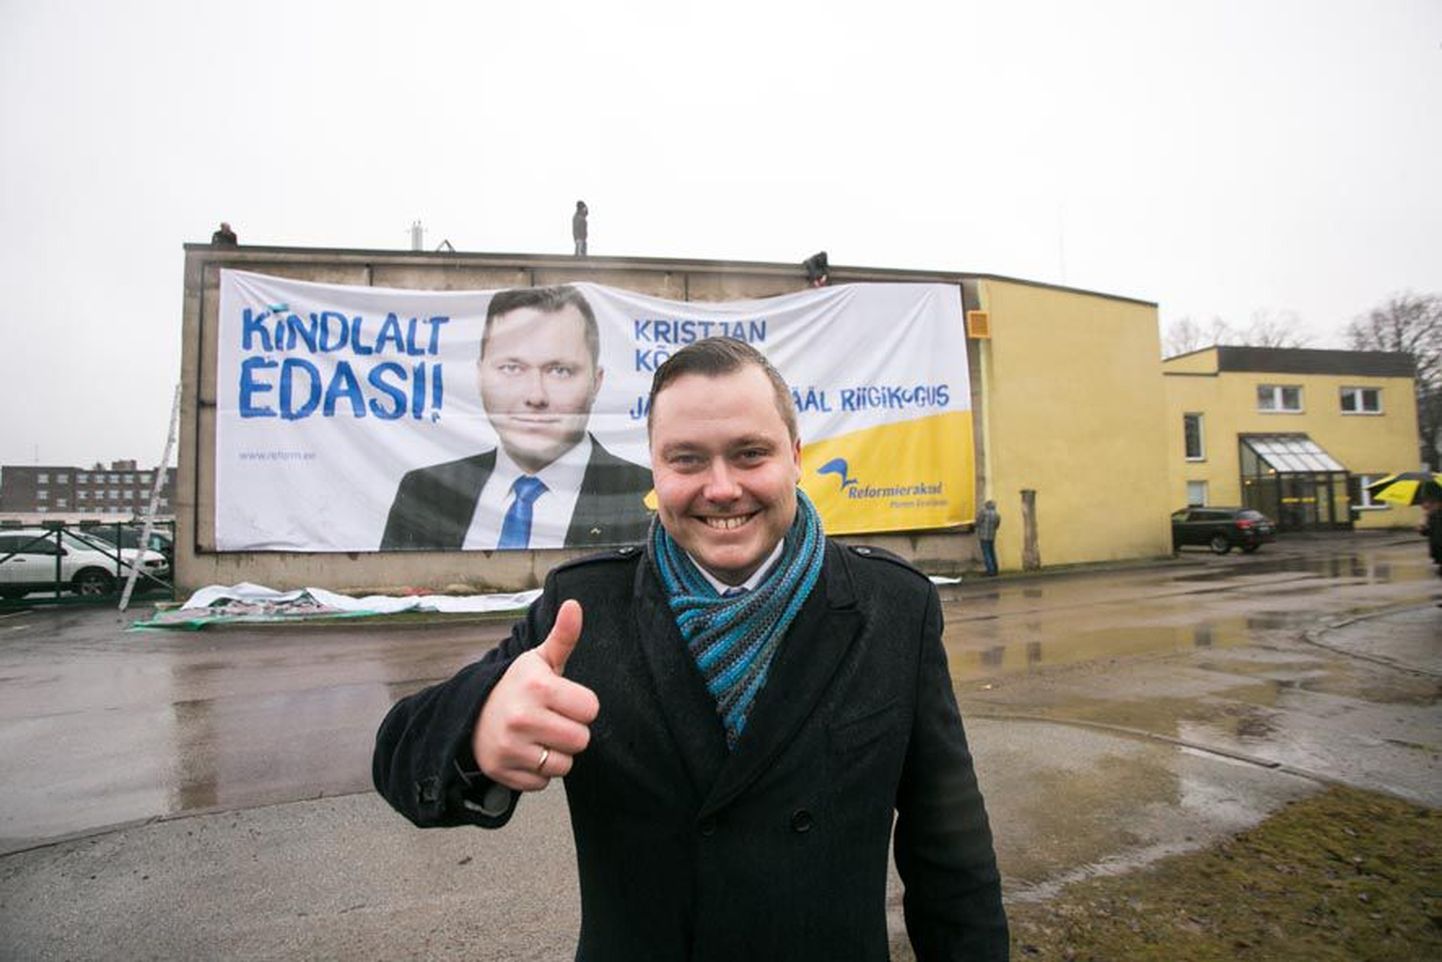 Kristjan Kõljalg pääses riigikokku üle noatera, sest kui ta oleks saanud valimistel 11 häält vähem, pääsenuks täna tema asemel sinna Kalle Jents.